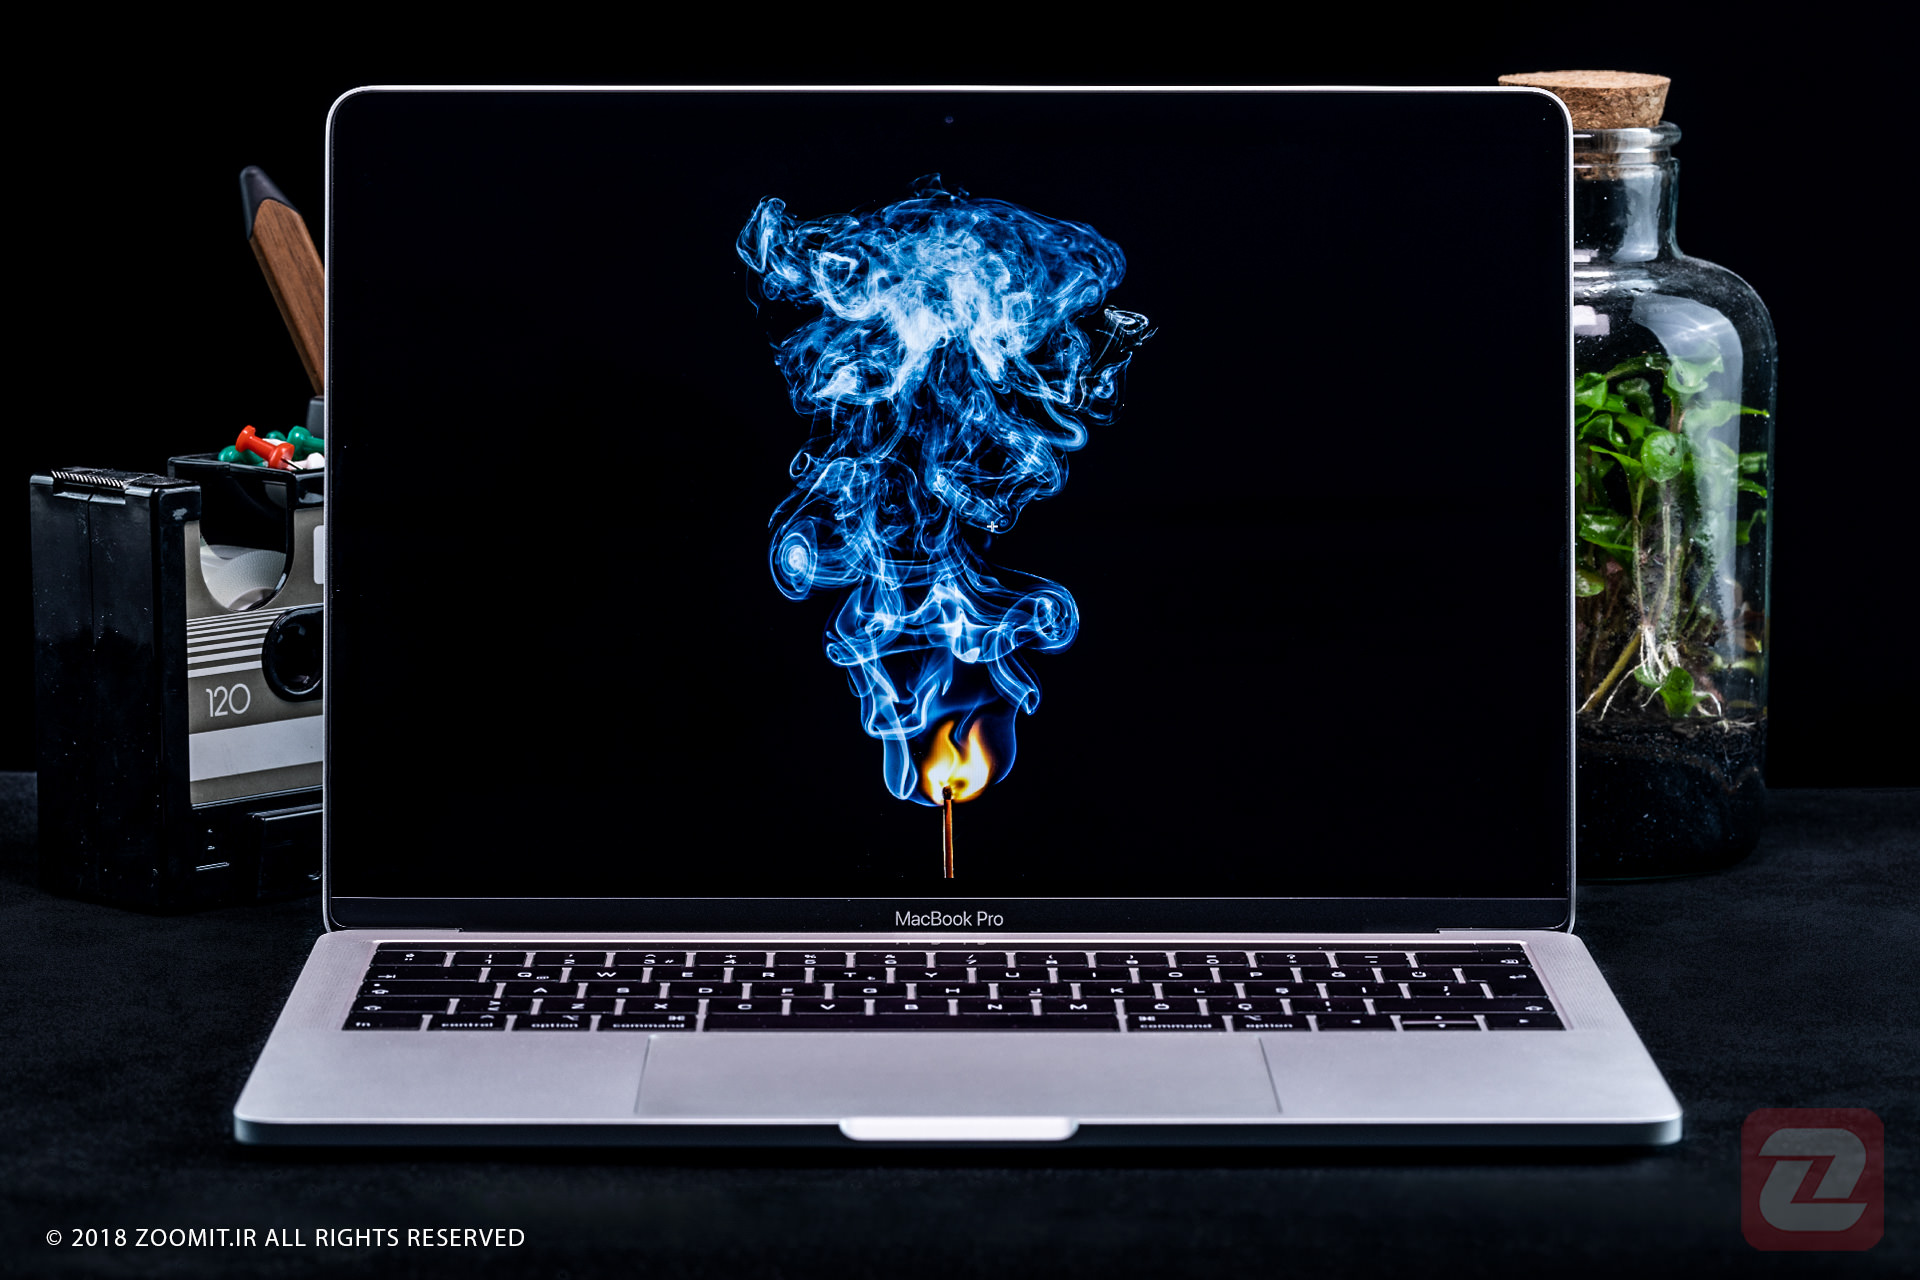 تصویری از یک مامپیوتر در کنار یک رادیو و گلدان شیشه ای و همینطور نمایشگر کامپیوتر در حال نشان دادن یک شعله با دود ابی است 